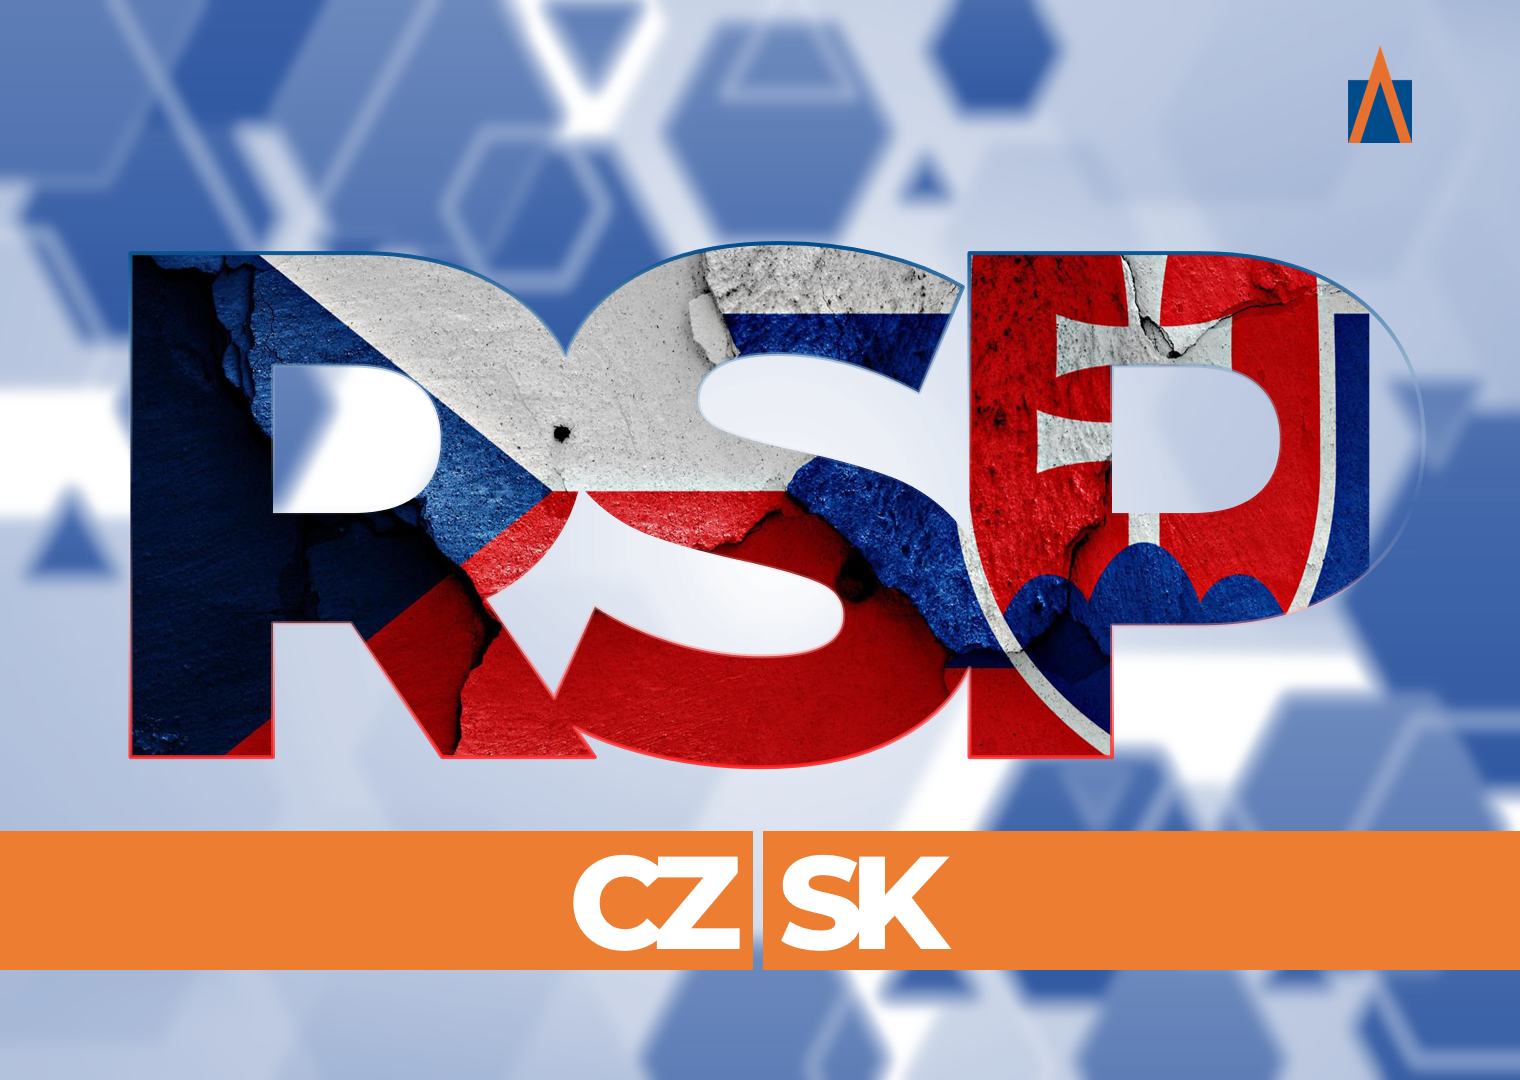 Úvodní fotografie blogového článku služby Registr stavebních projektů (RSP - AMA s.r.o.) s názvem "Rozšiřujeme data o Slovenskou republiku"